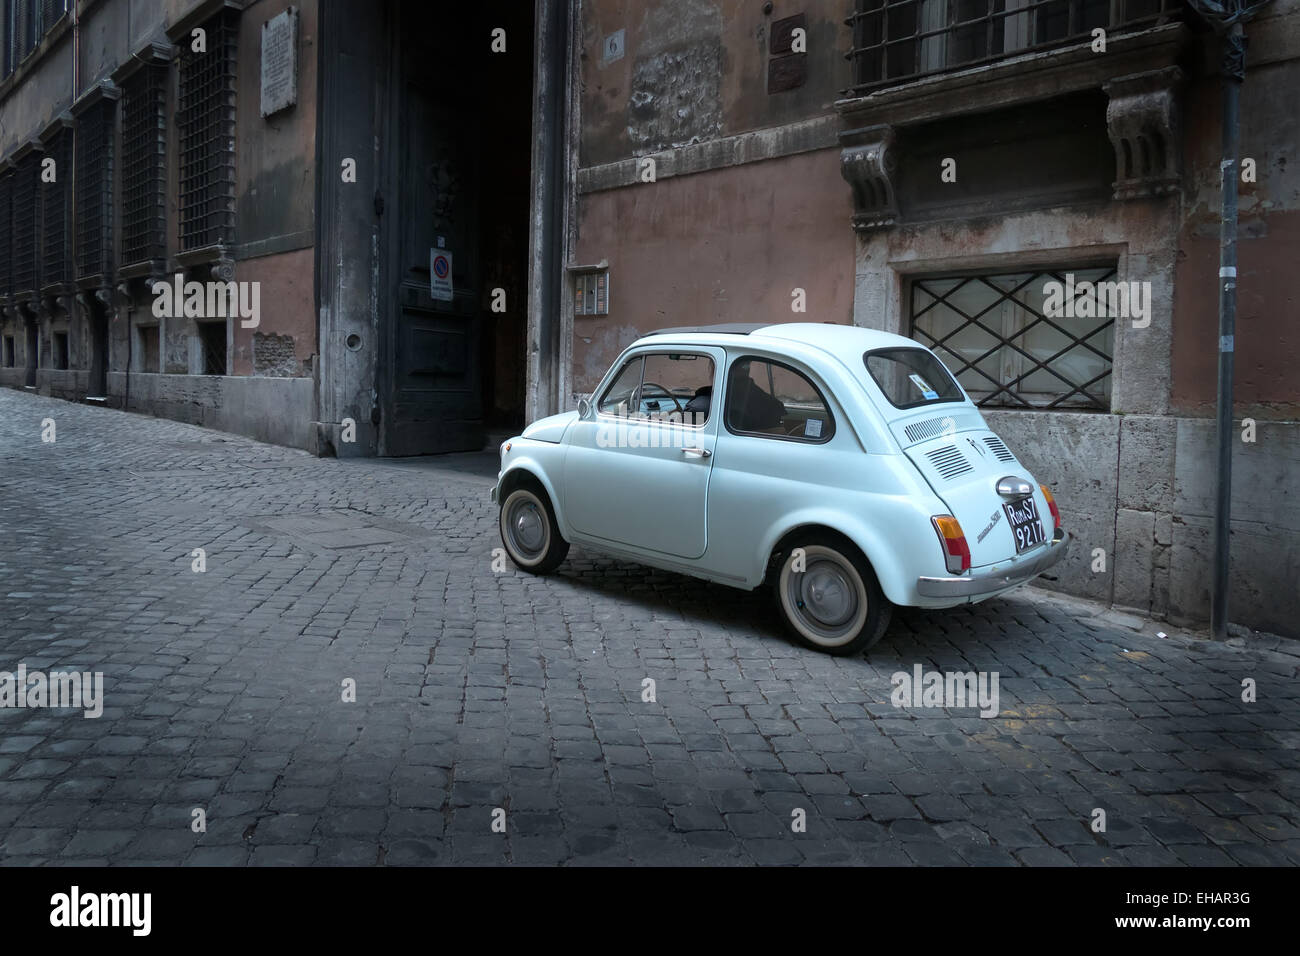 Old car, vintage Fiat Cinquecento parked in the street. Rome, Roma, Italy, Italia, Italian city Stock Photo